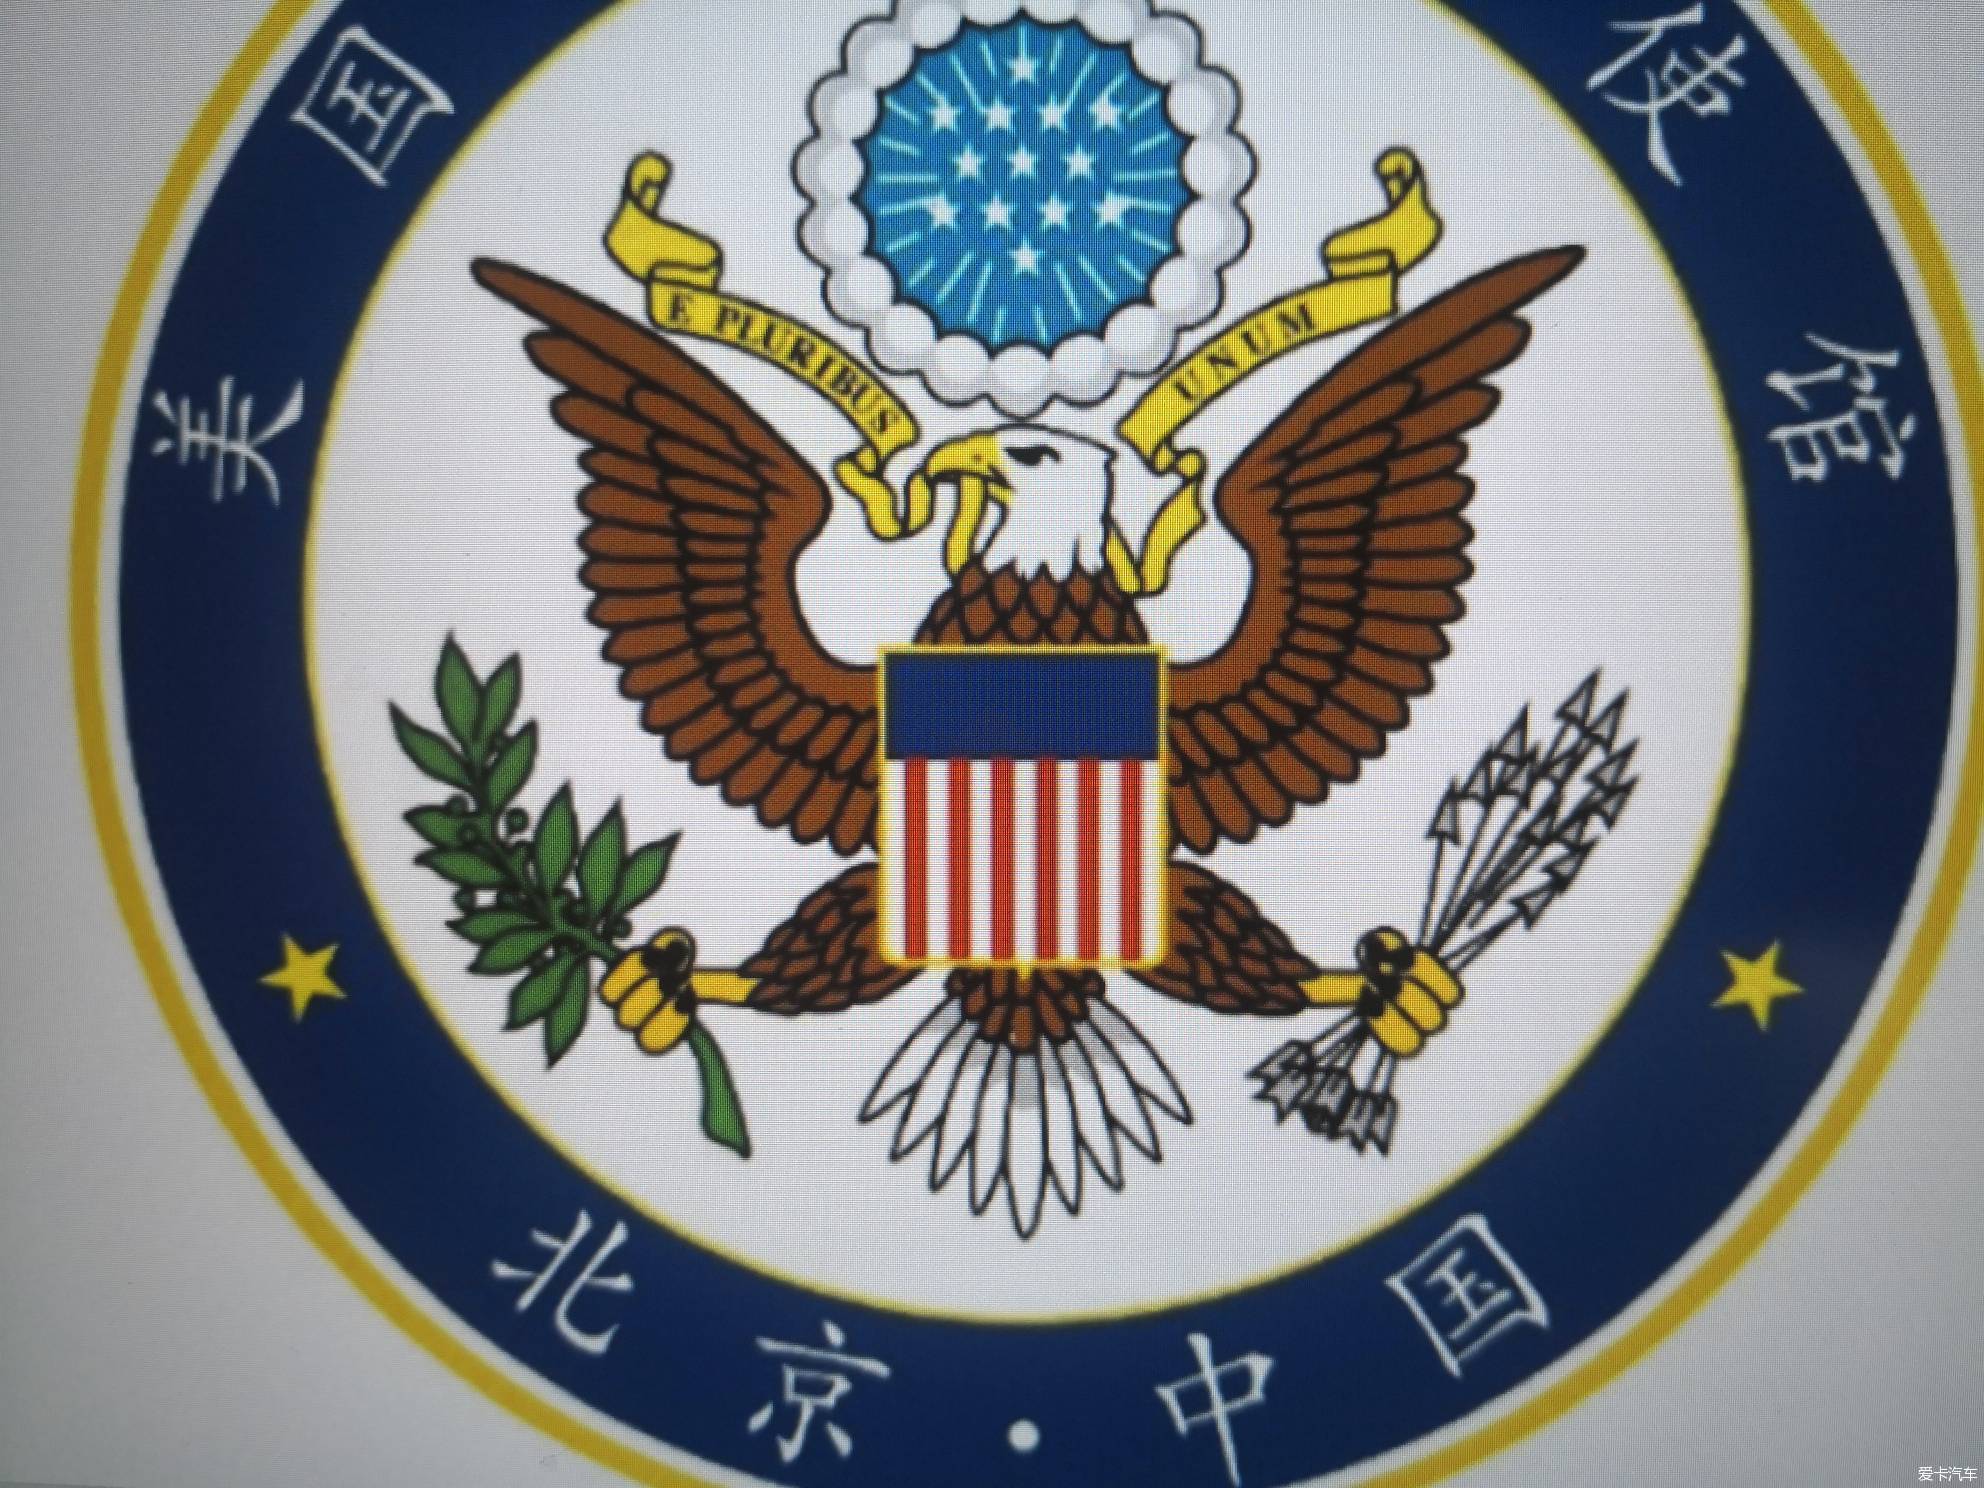 【图】去中国化,美国驻中国大使馆徽标去掉了中国两字,据说像花圈